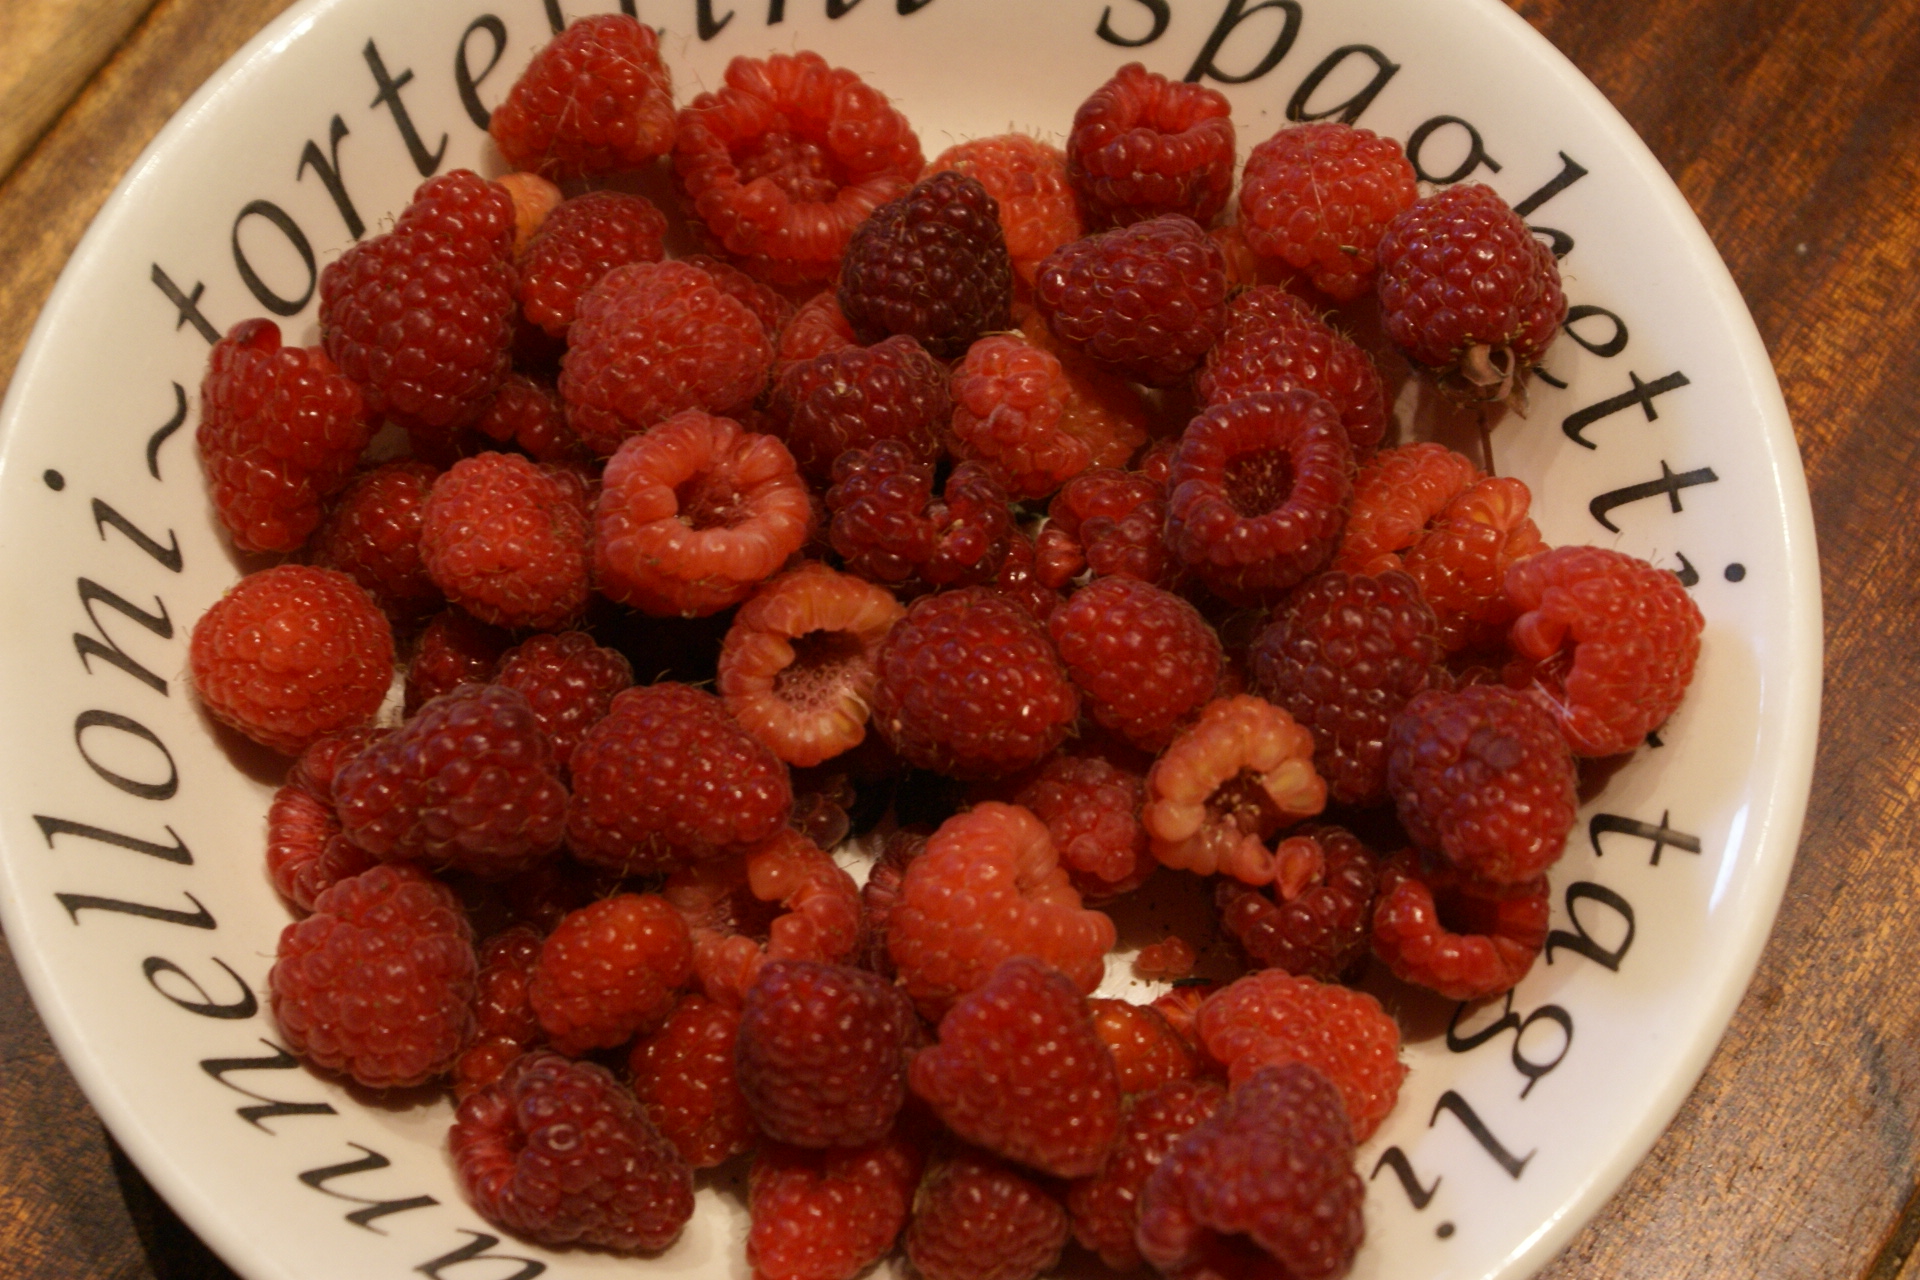 Autumn raspberries